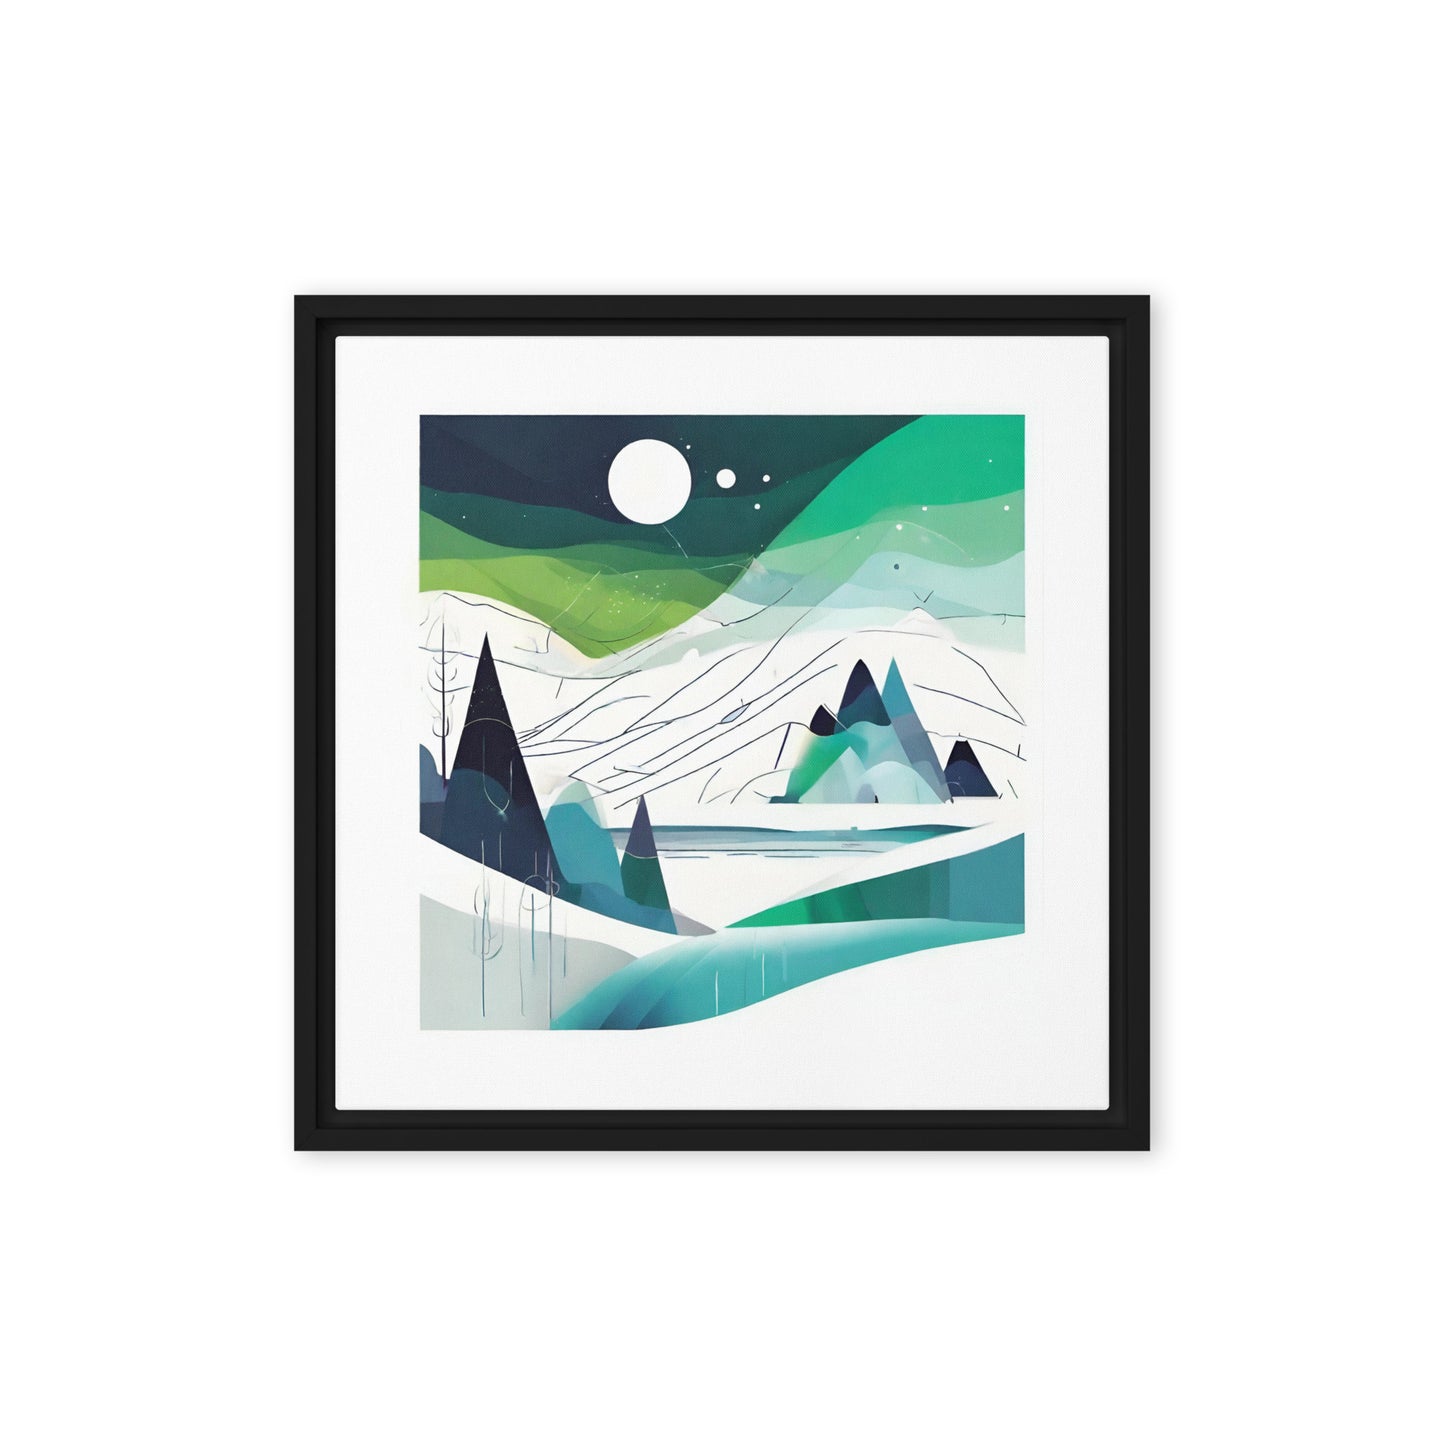 Northern lights - Framed canvas